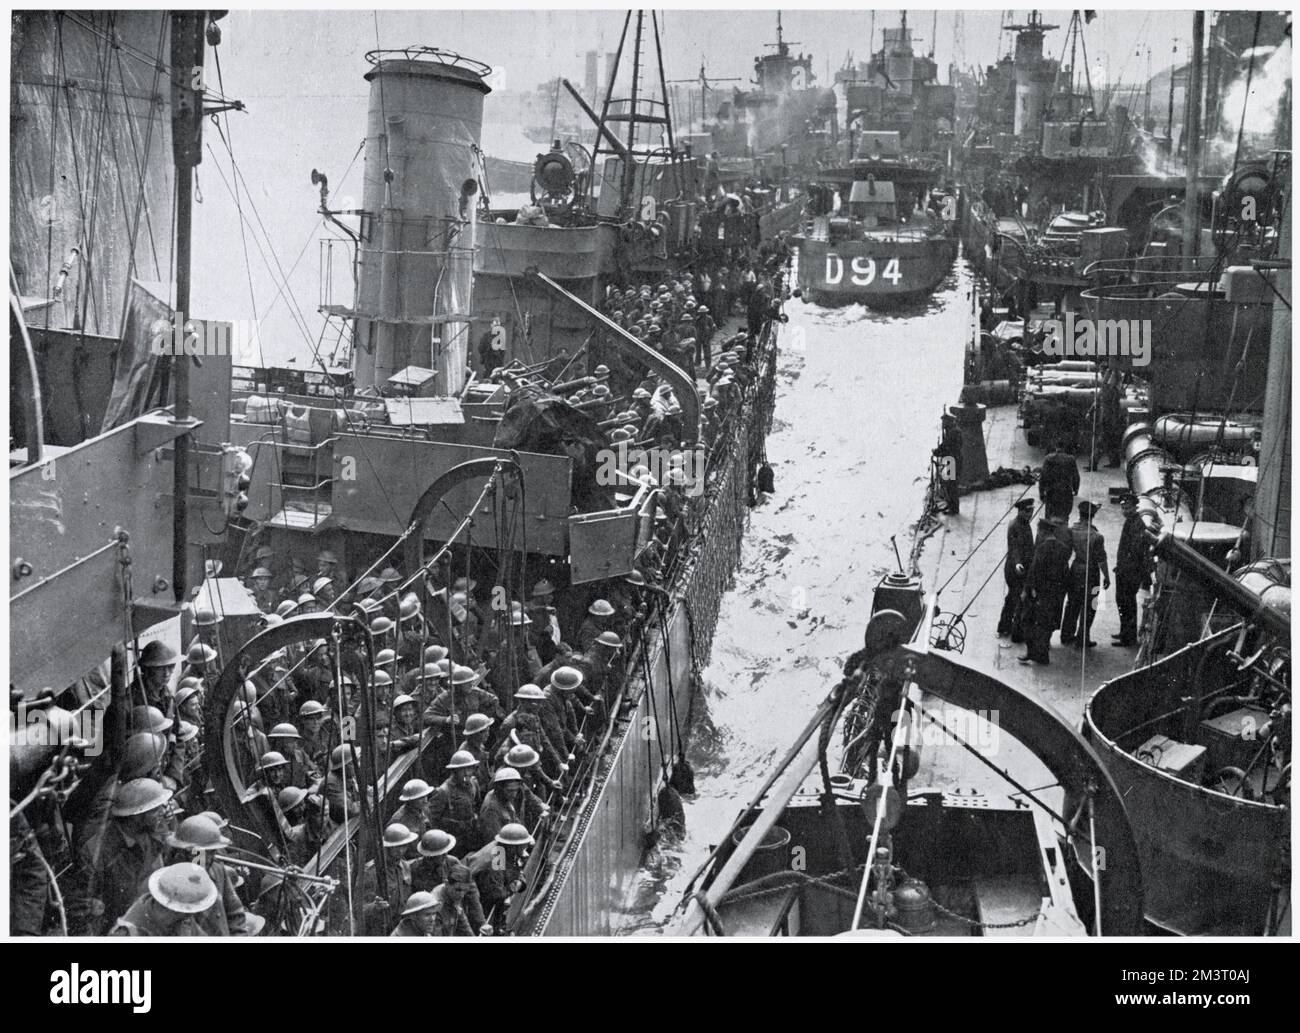 Die Rückkehr der britischen Expeditionstruppe aus Dünkirchen, Nordfrankreich, zeigt die Kais, die mit drei Seeschiffen besetzt sind, und weitere Schiffe, die nach der Evakuierung voller Truppen ankommen. Datum: 1940 Stockfoto